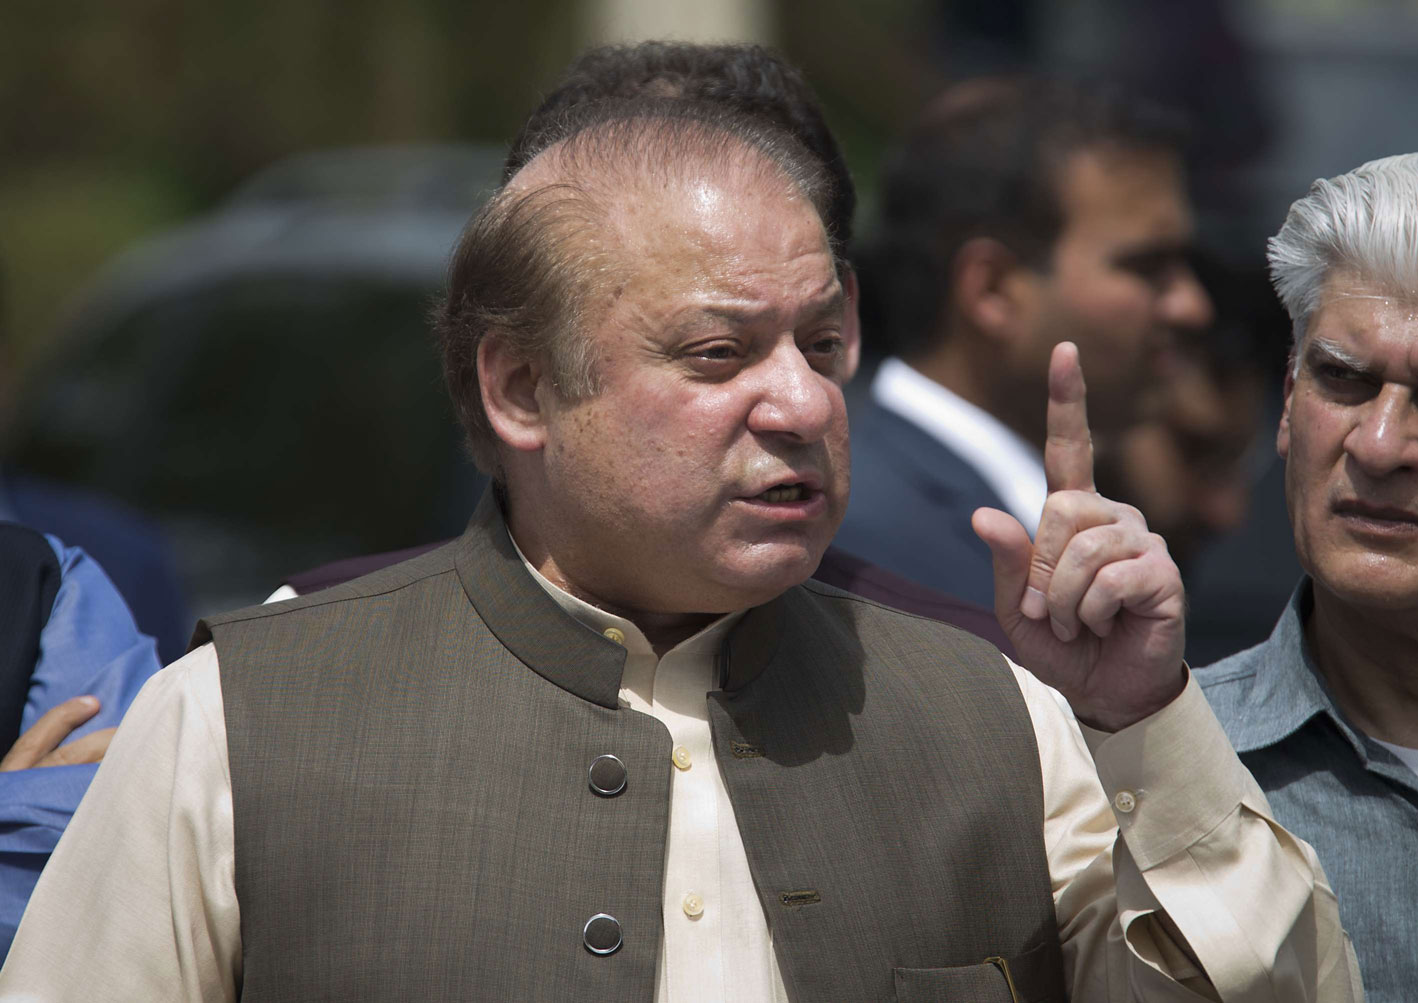 رئيس الوزراء الباكستاني السابق نواز شريف في السجن بتهمة فساد